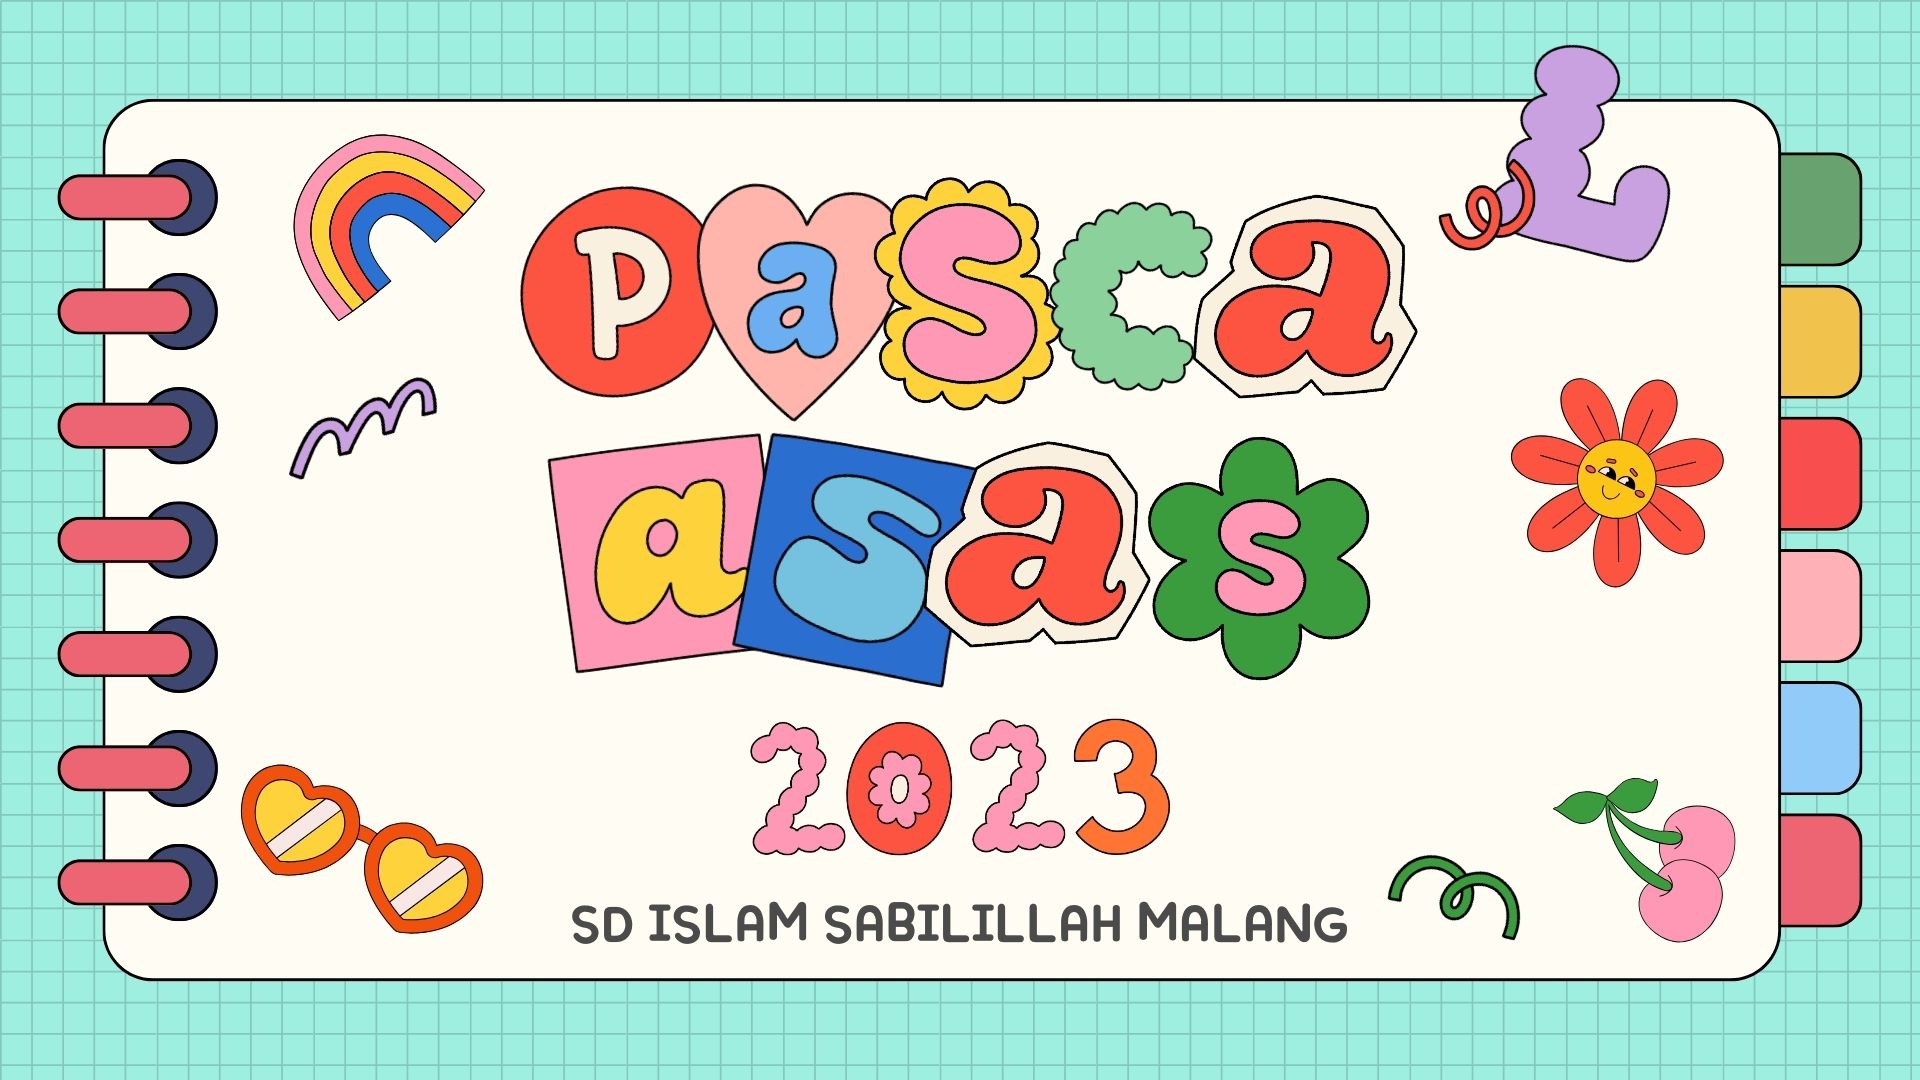 7. PASCA ASAS II 2023